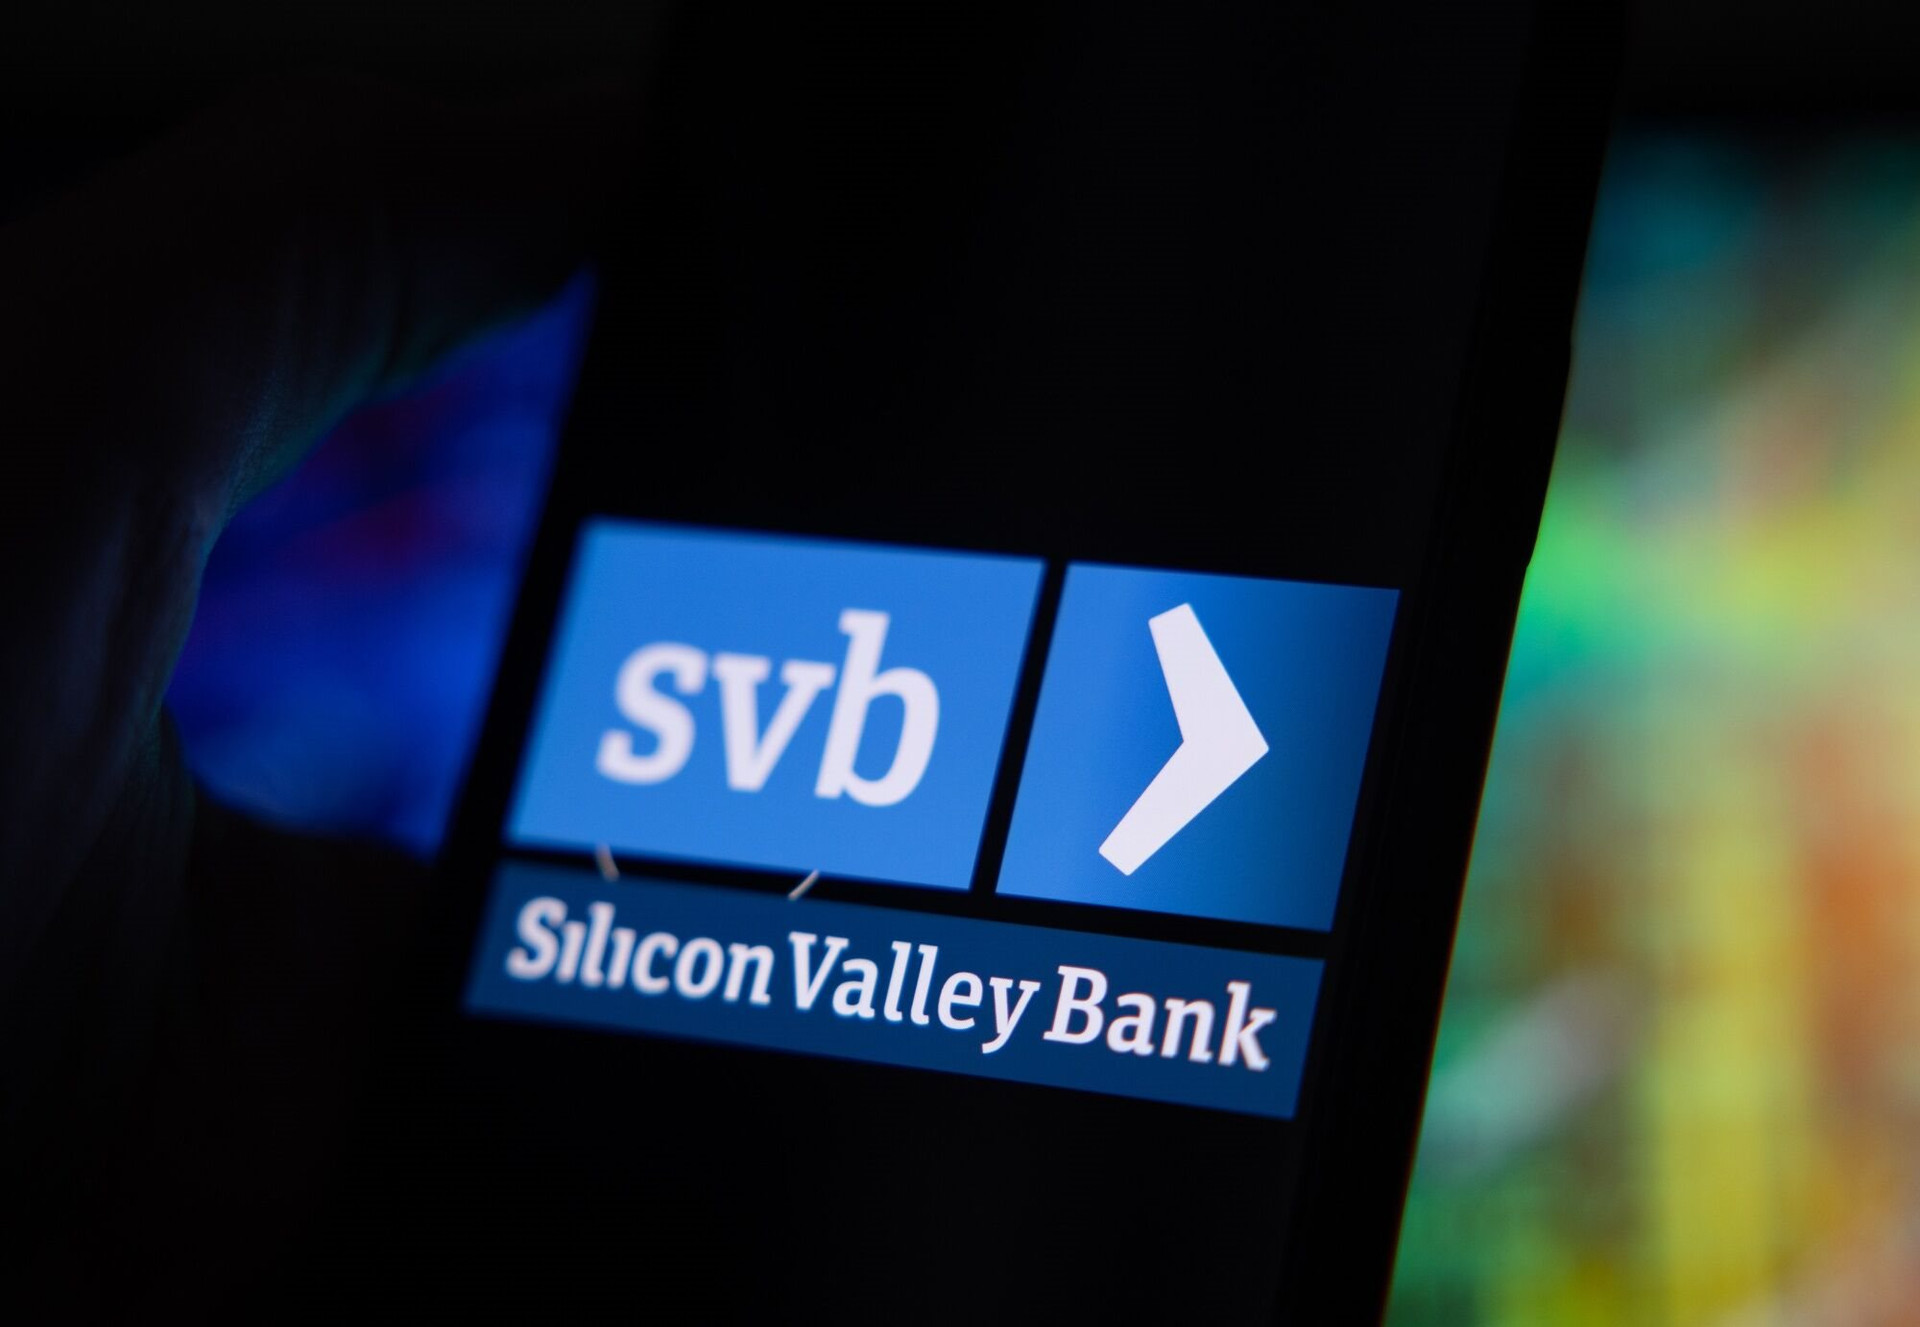 SVB - nhà băng quản lý hàng trăm tỷ đô chính thức sụp đổ, cơ quan quản lý tịch thu tài sản để chuẩn bị thanh lý - Ảnh 1.